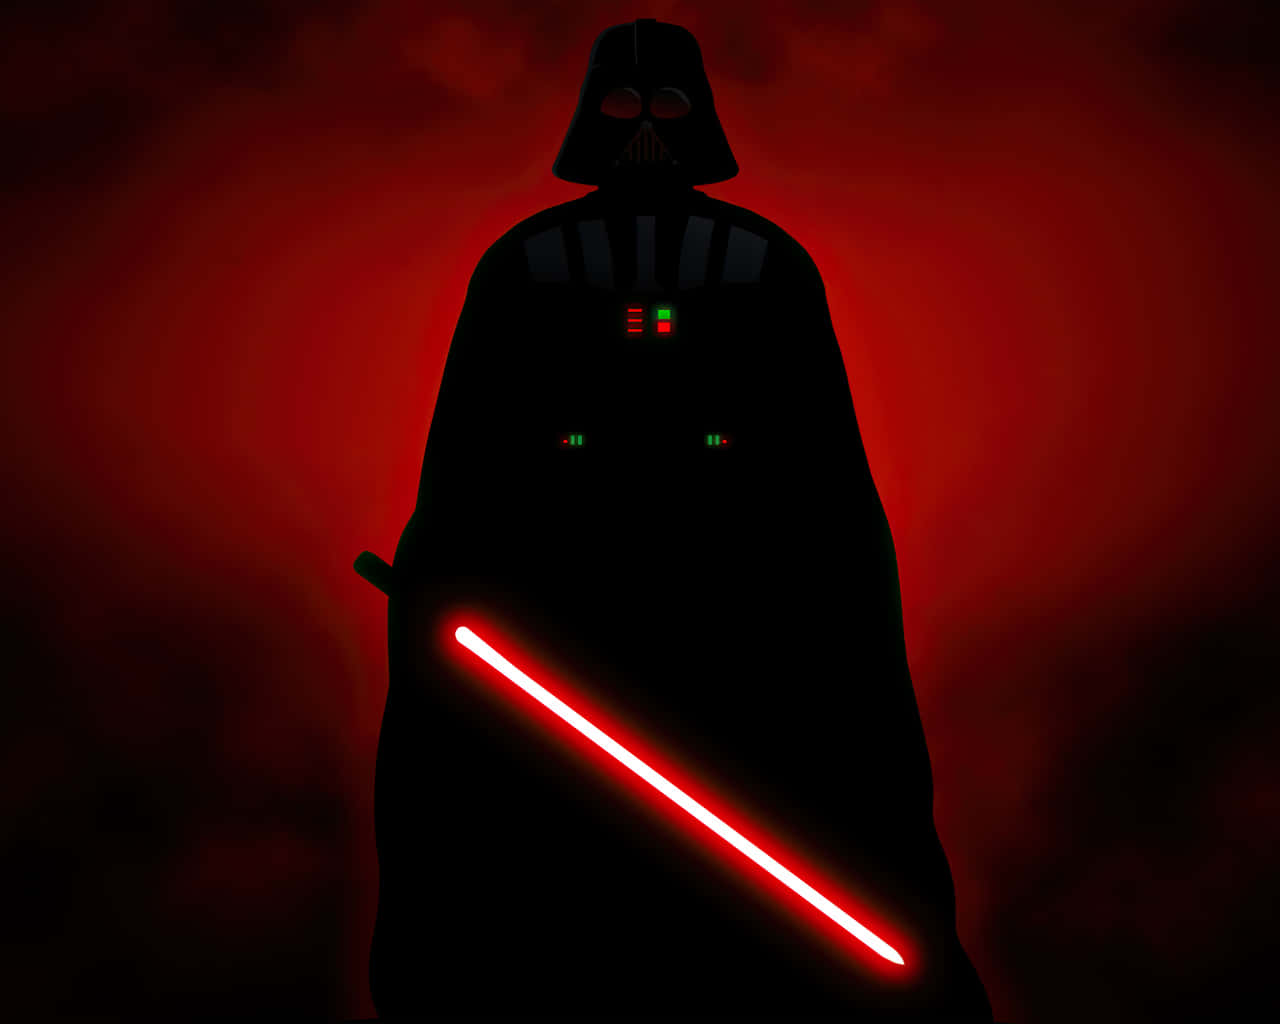 Darth Vader In A Red Light